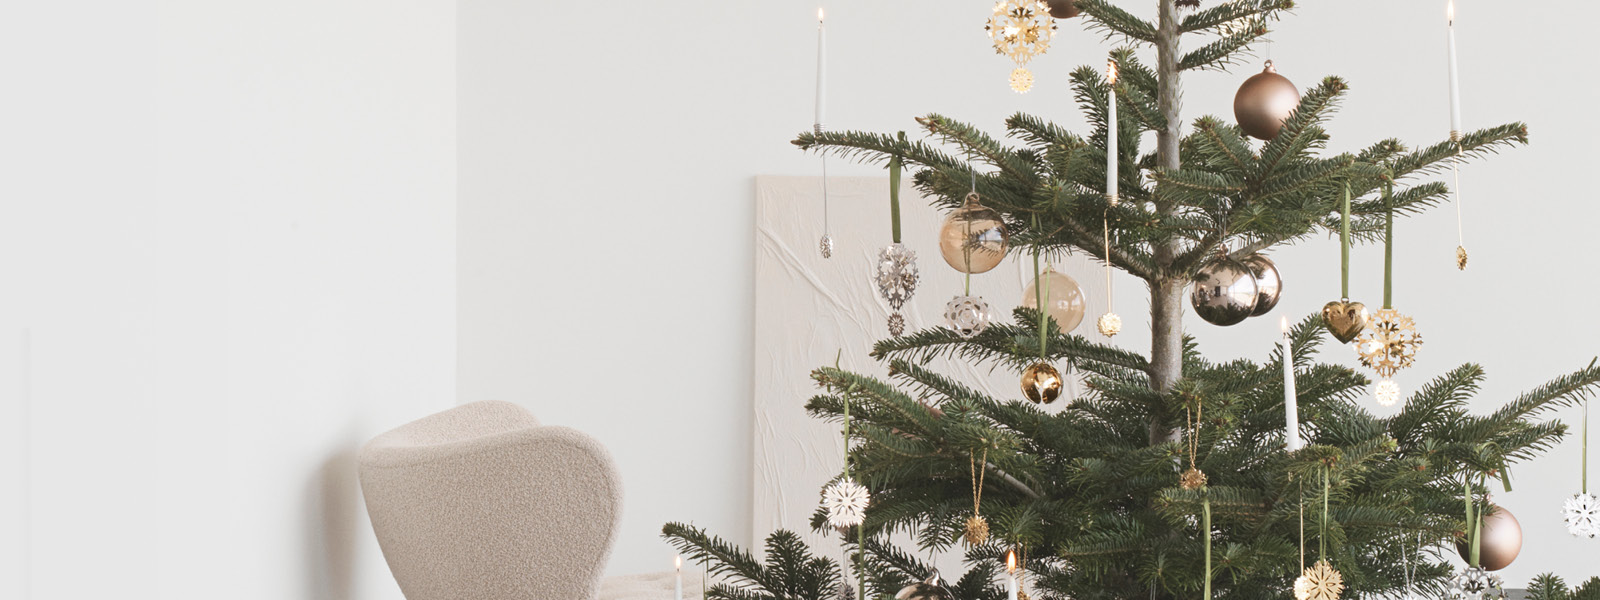 Lænestol anspændt Konvertere Christmas tree toppers, ornaments and decorations | Georg Jensen